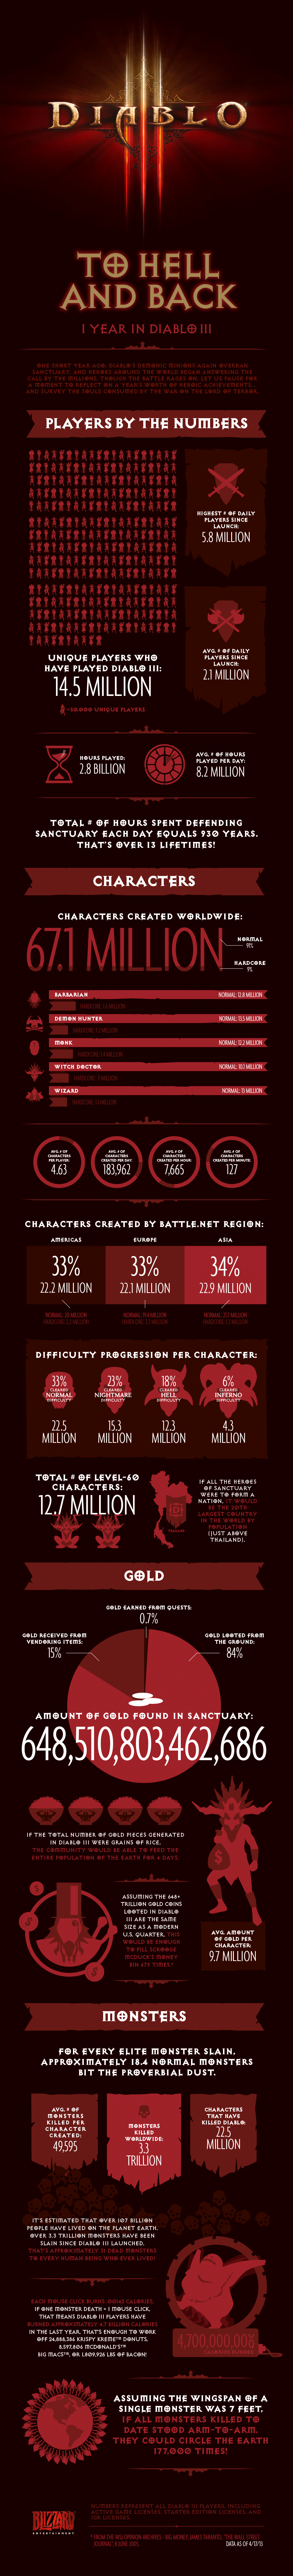 diablo 3 infographic